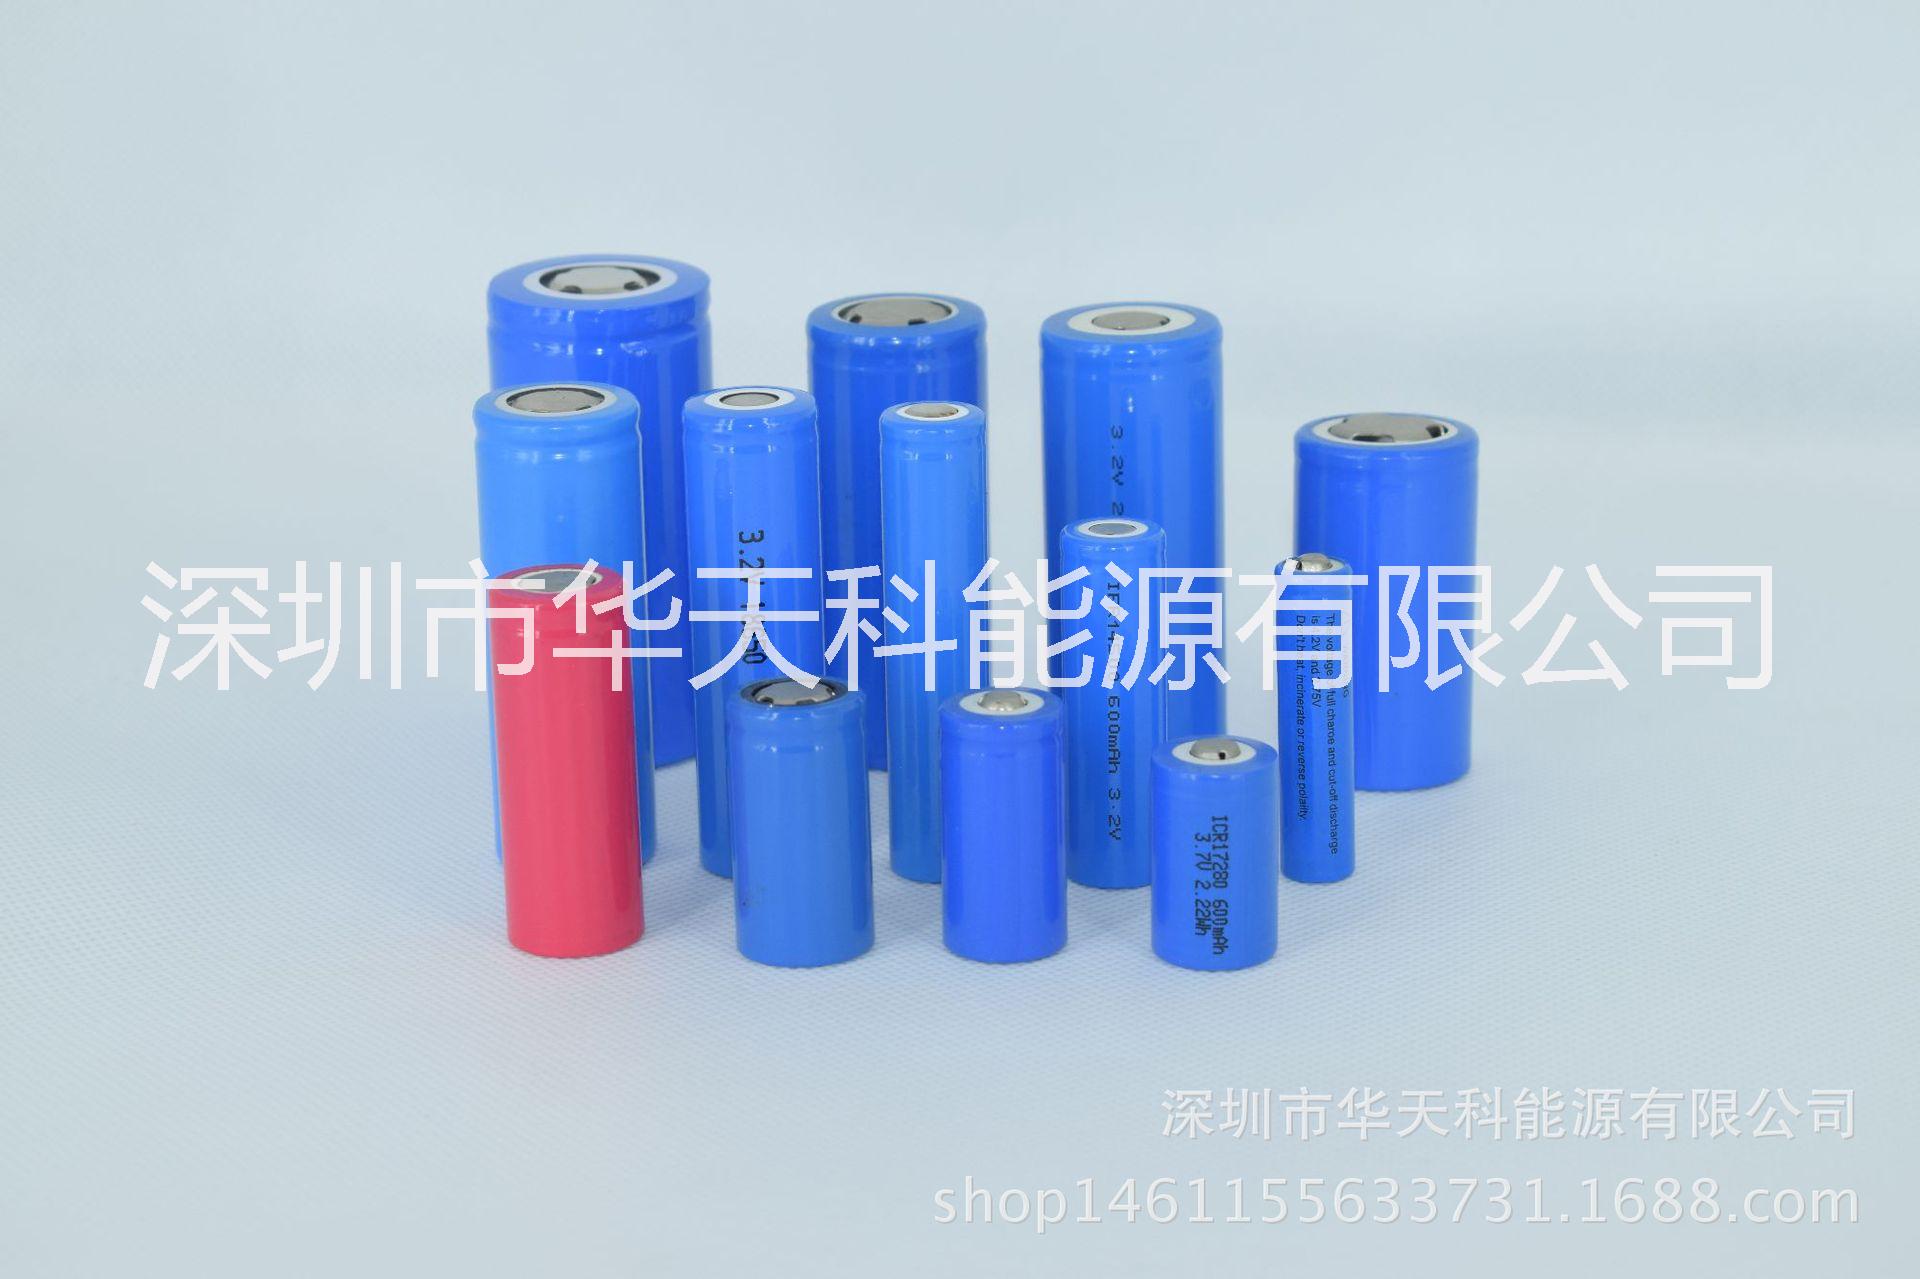 1050毫安聚合物锂电池，供应102738-3.7V-1050毫安聚合物锂电池，聚合物电池批发销售